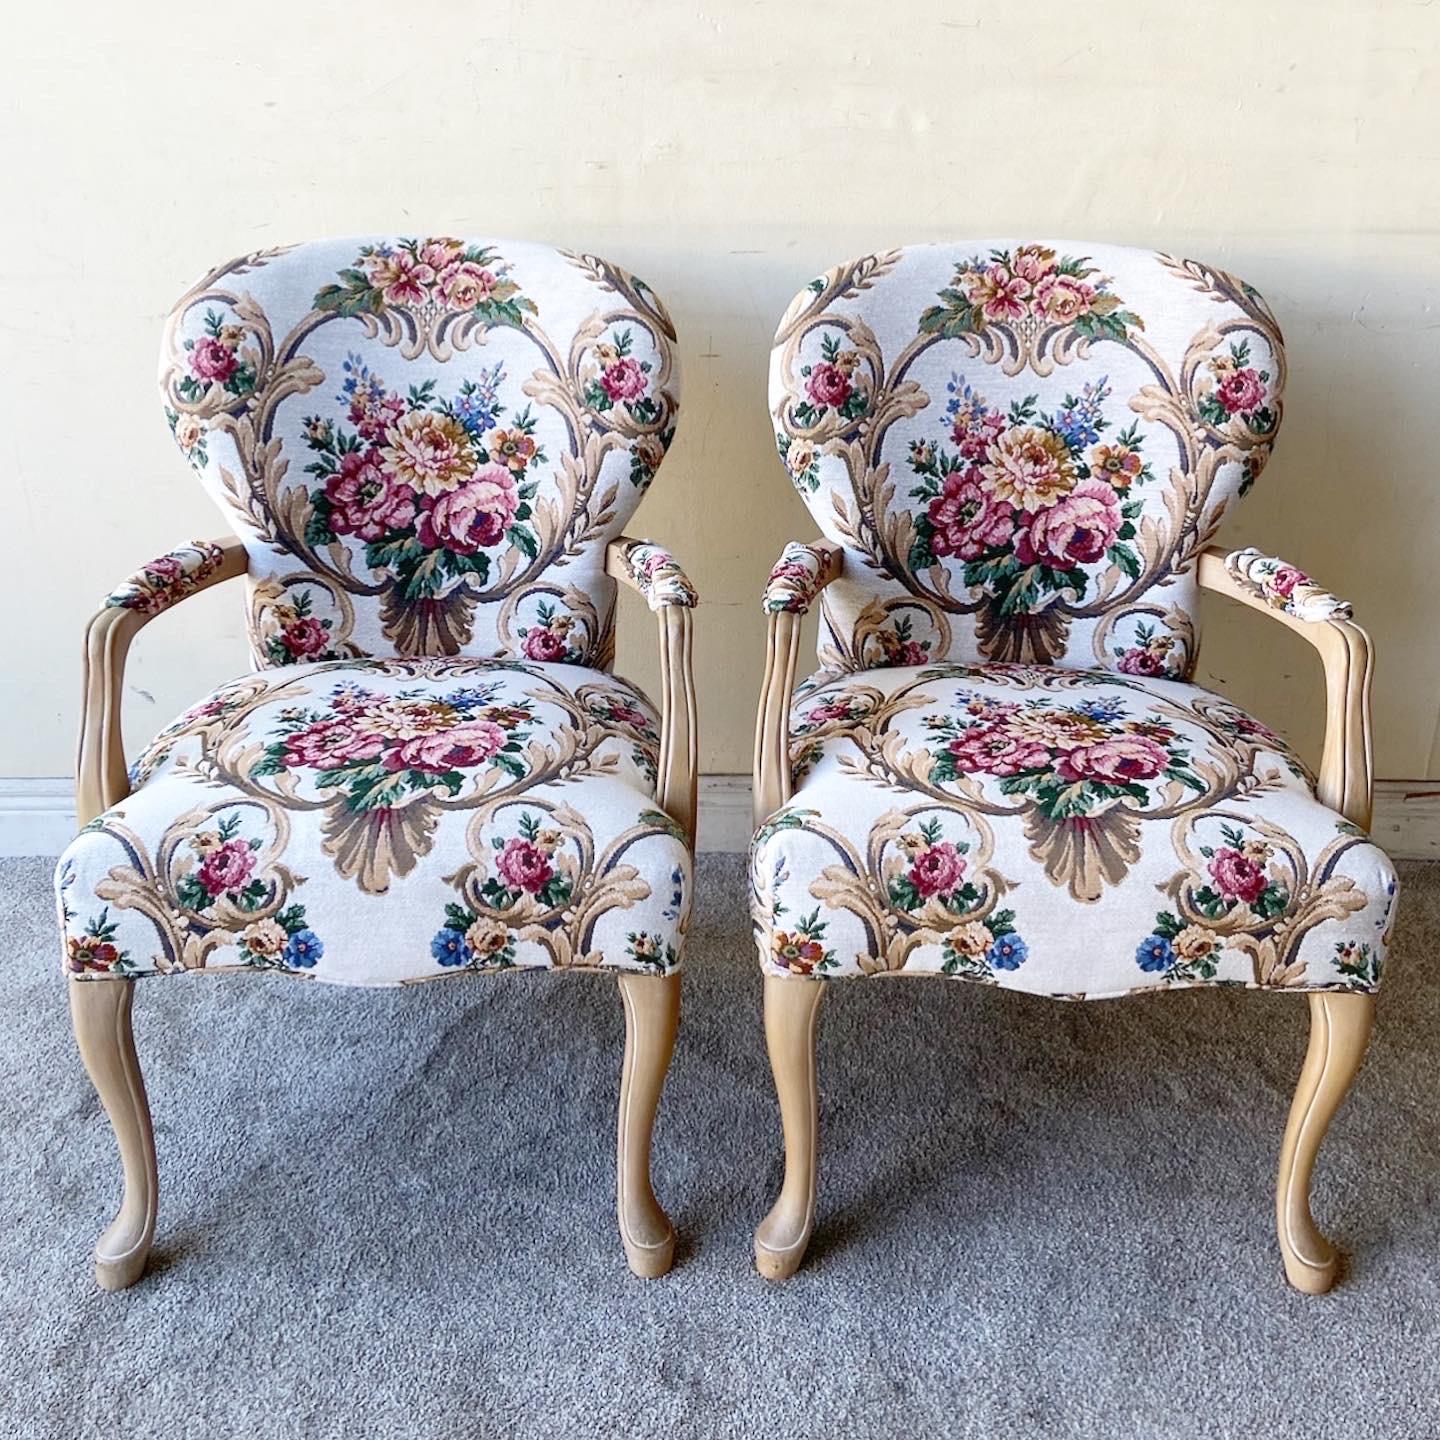 Superbe paire de fauteuils vintage. Chacun d'entre eux est doté d'un rembourrage floral et d'un cadre en bois.
 